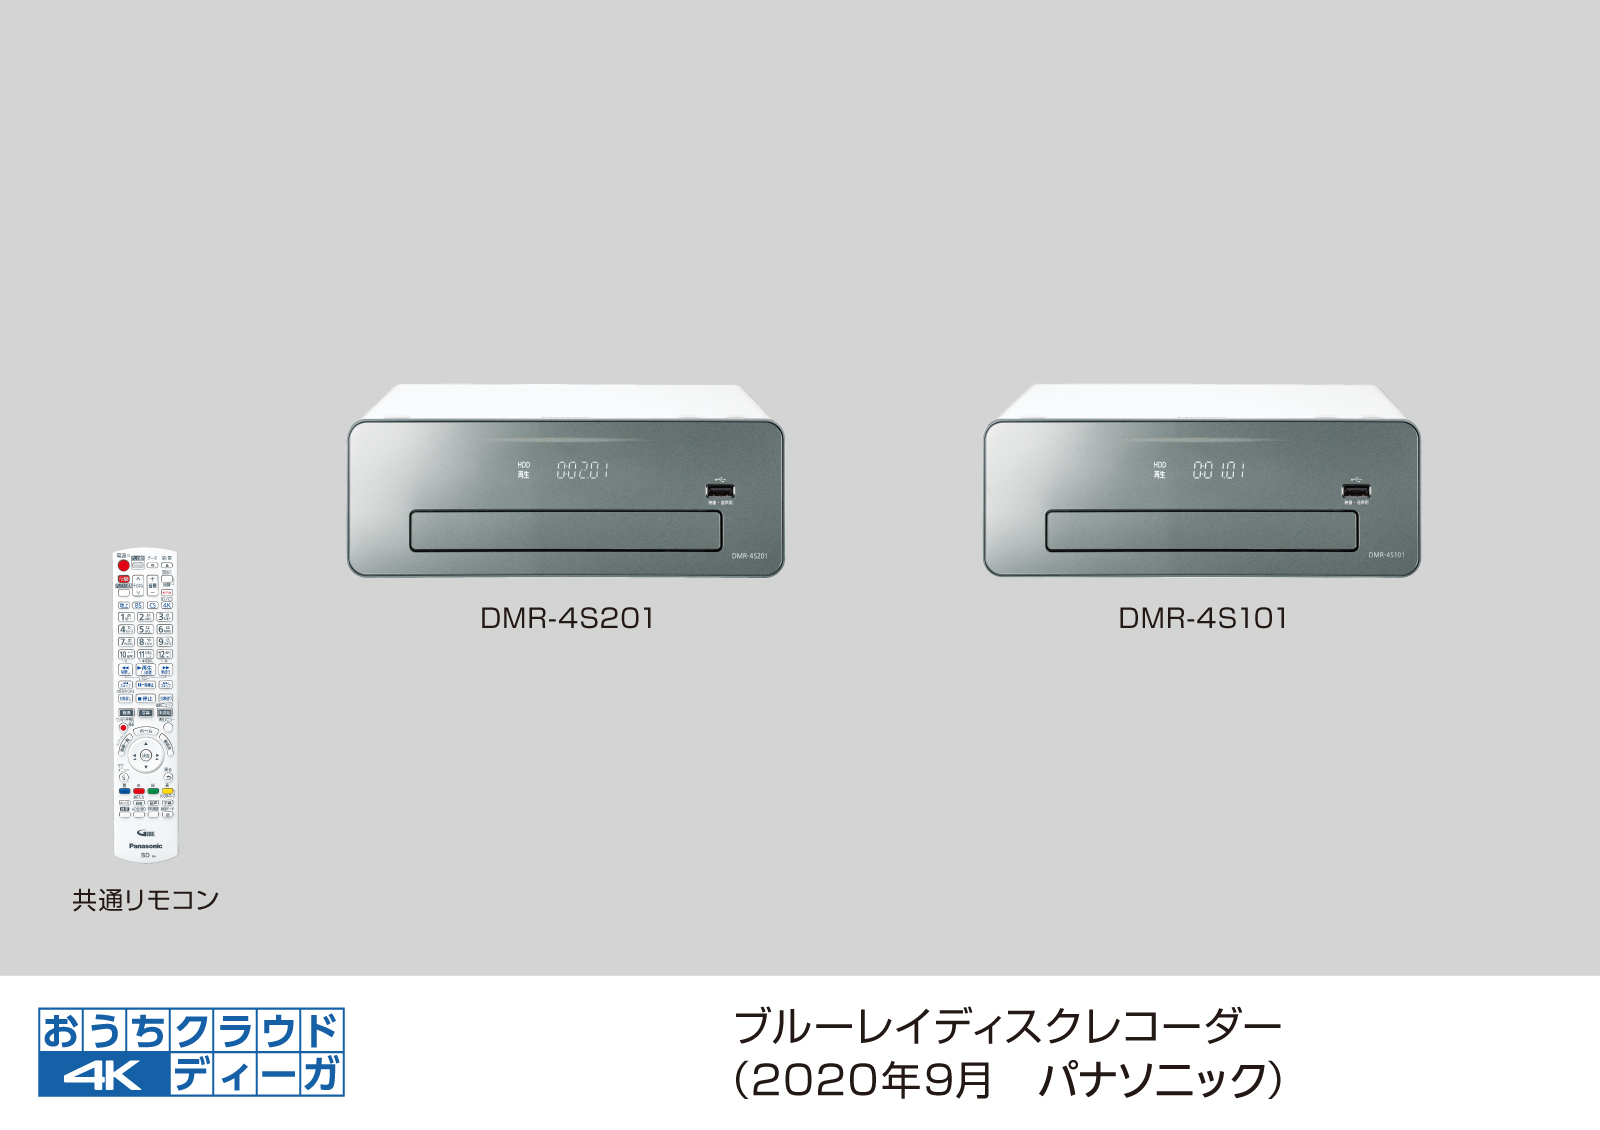 ブルーレイディスクレコーダー新製品 4kチューナー内蔵ディーガ 2モデルを発売 パナソニックのプレスリリース